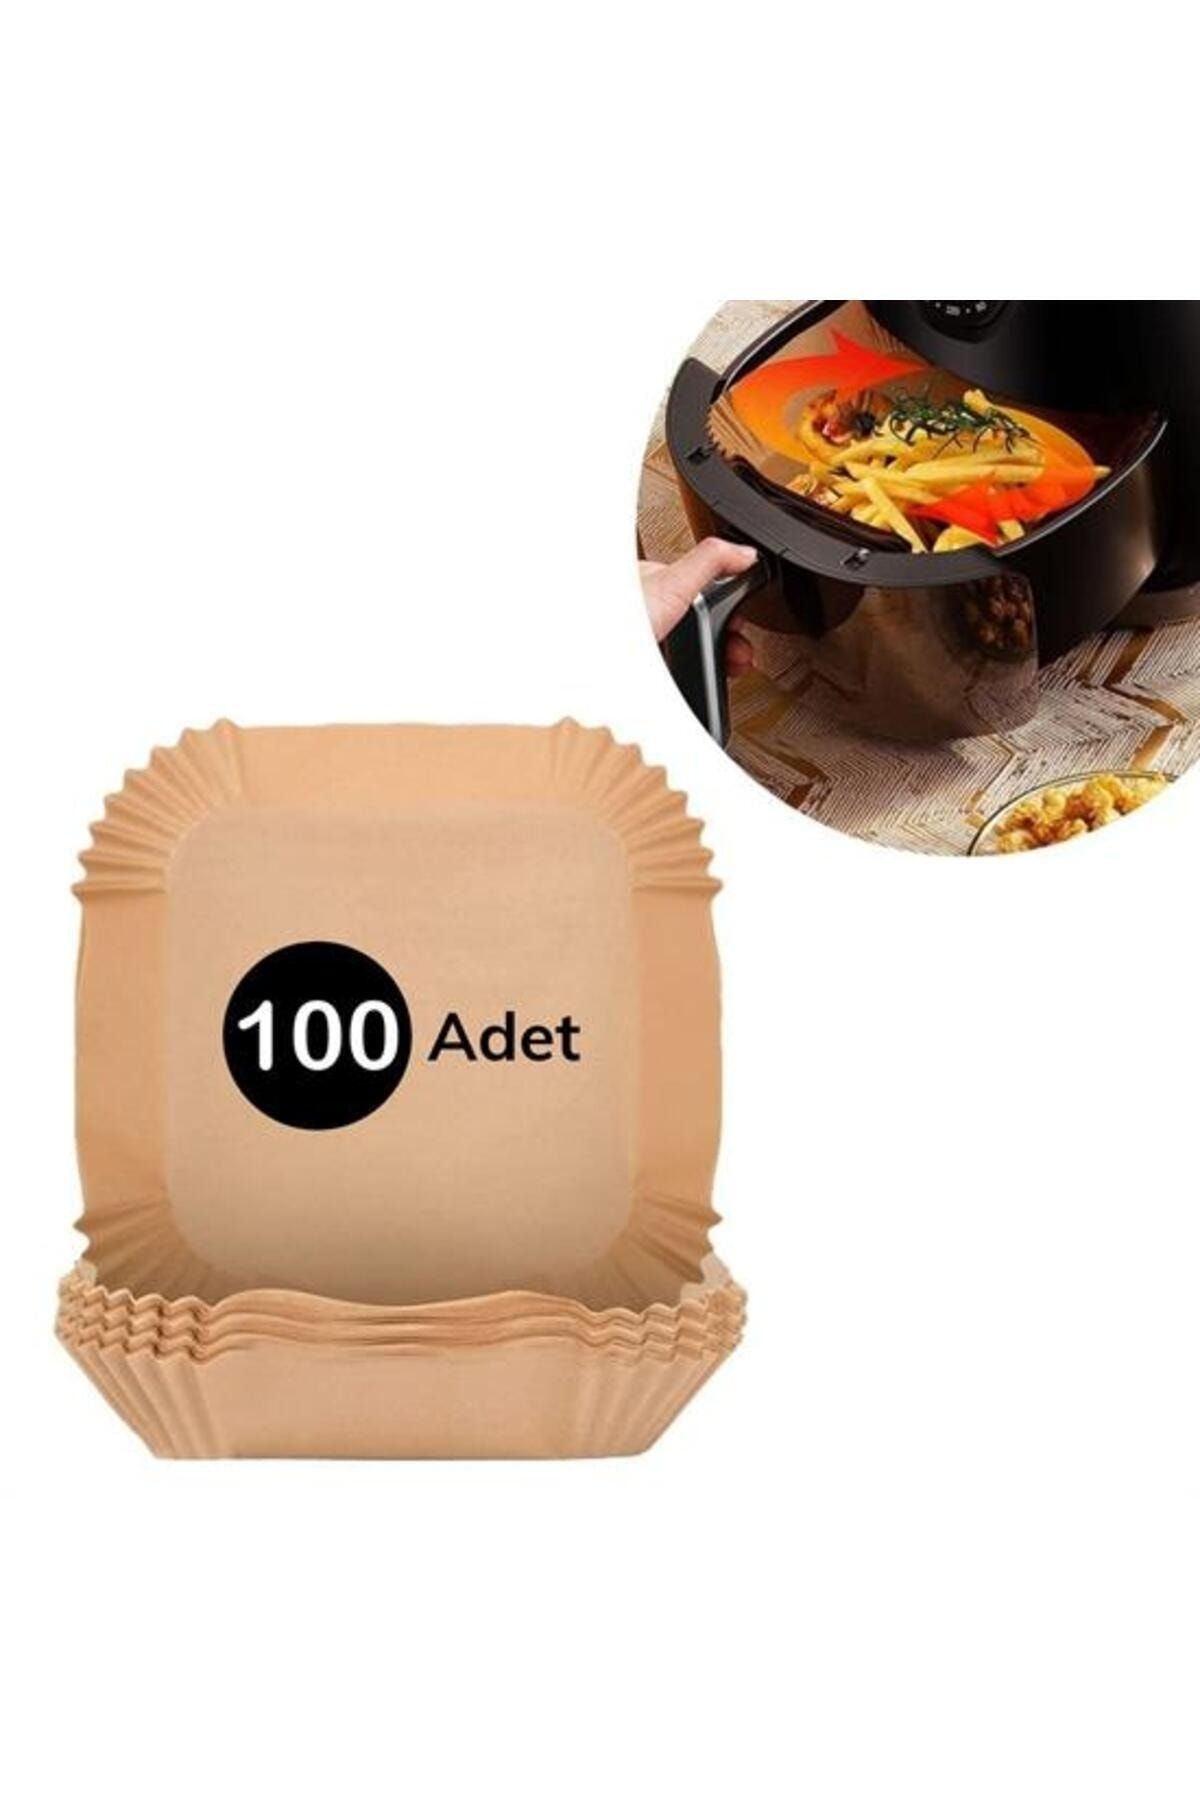 KAYAMU 100 Adet Air Fryer Pişirme Kağıdı Tek Kullanımlık Gıda Yağlı Kağıdı Kare Tabak Model